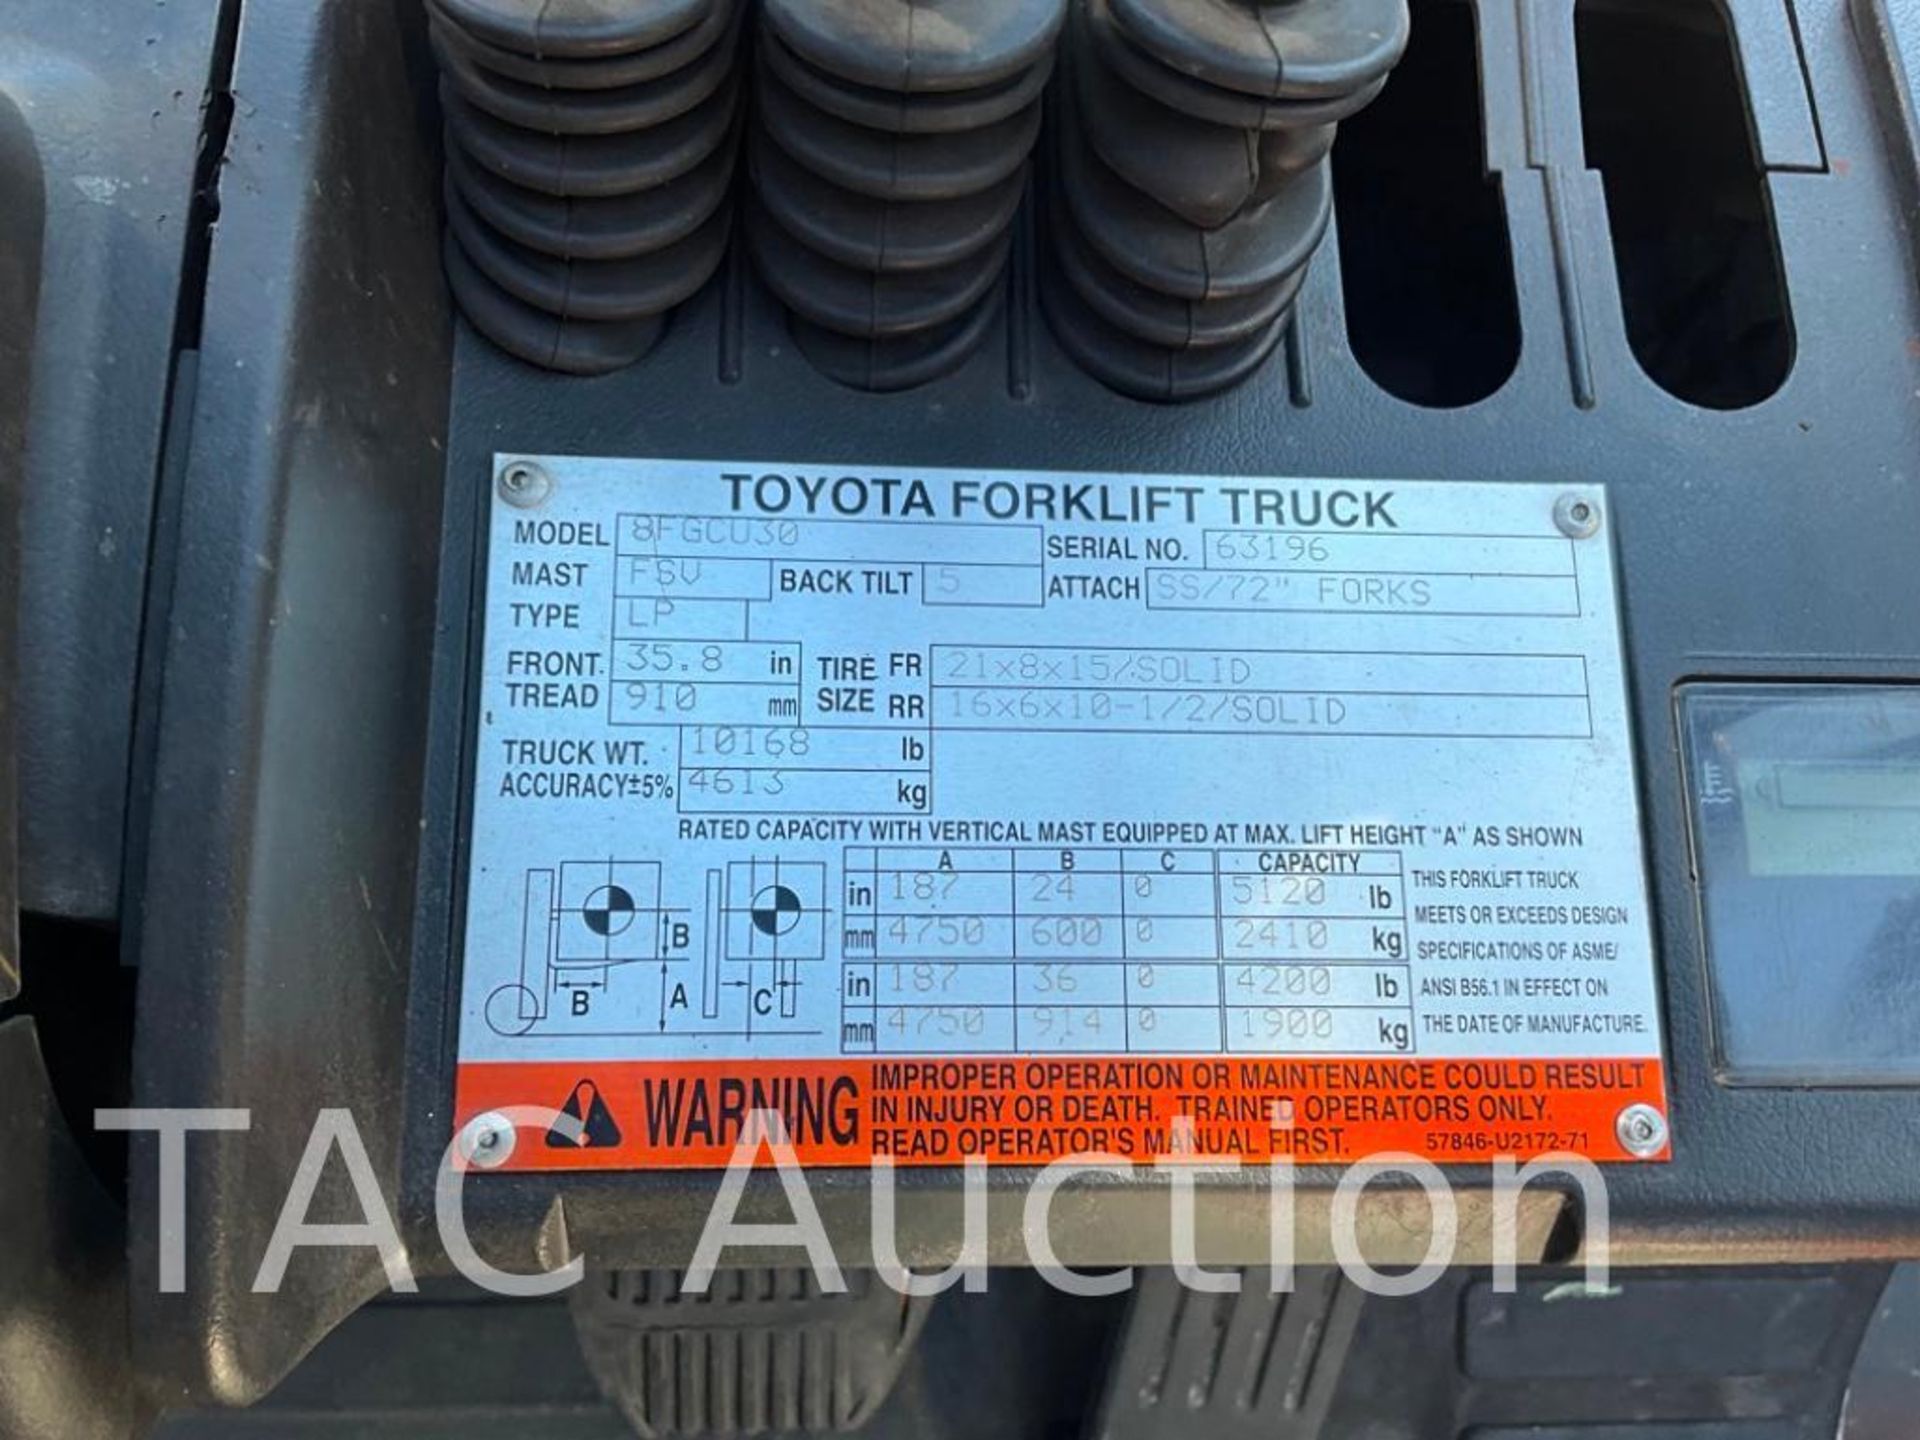 2015 Toyota 8FGCU30 6000lb Forklift - Image 23 of 23